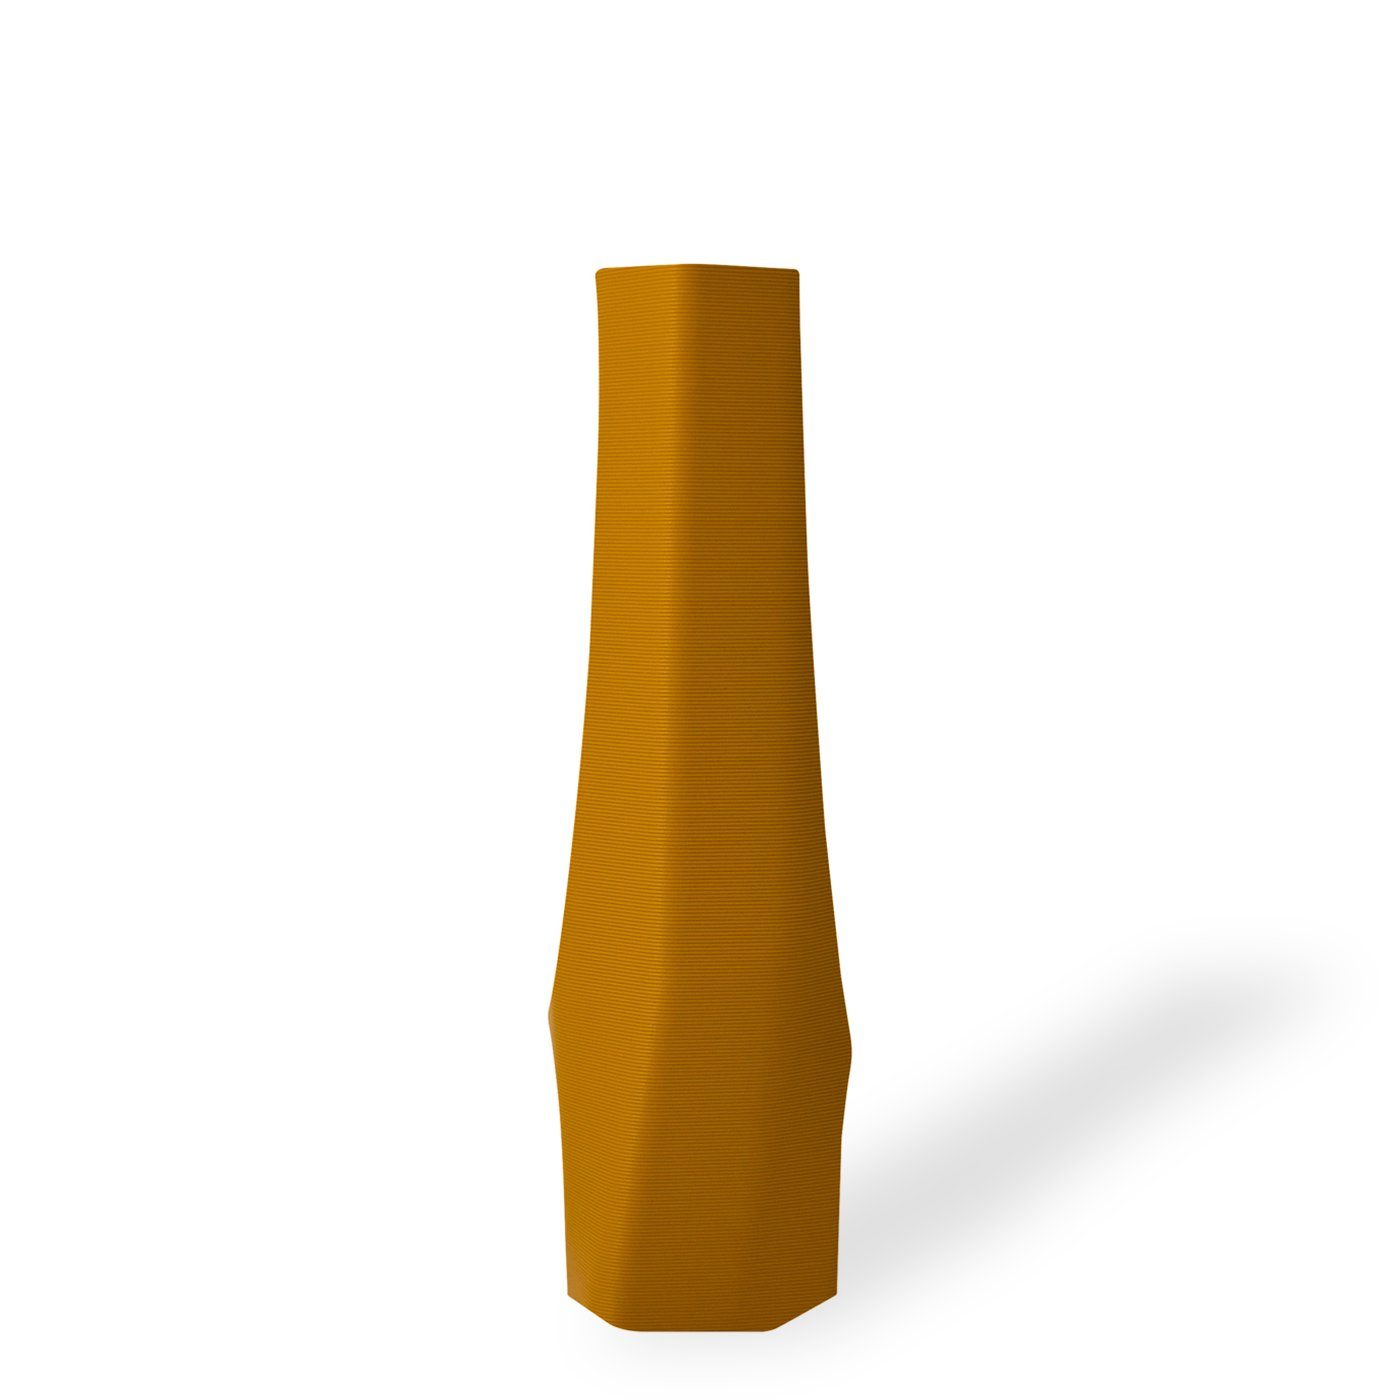 Shapes - Decorations Dekovase the vase - hexagon (basic), 3D Vasen, viele Farben, 100% 3D-Druck (Einzelmodell, 1 Vase), Wasserdicht; Leichte Struktur innerhalb des Materials (Rillung) Ocker (gelb(